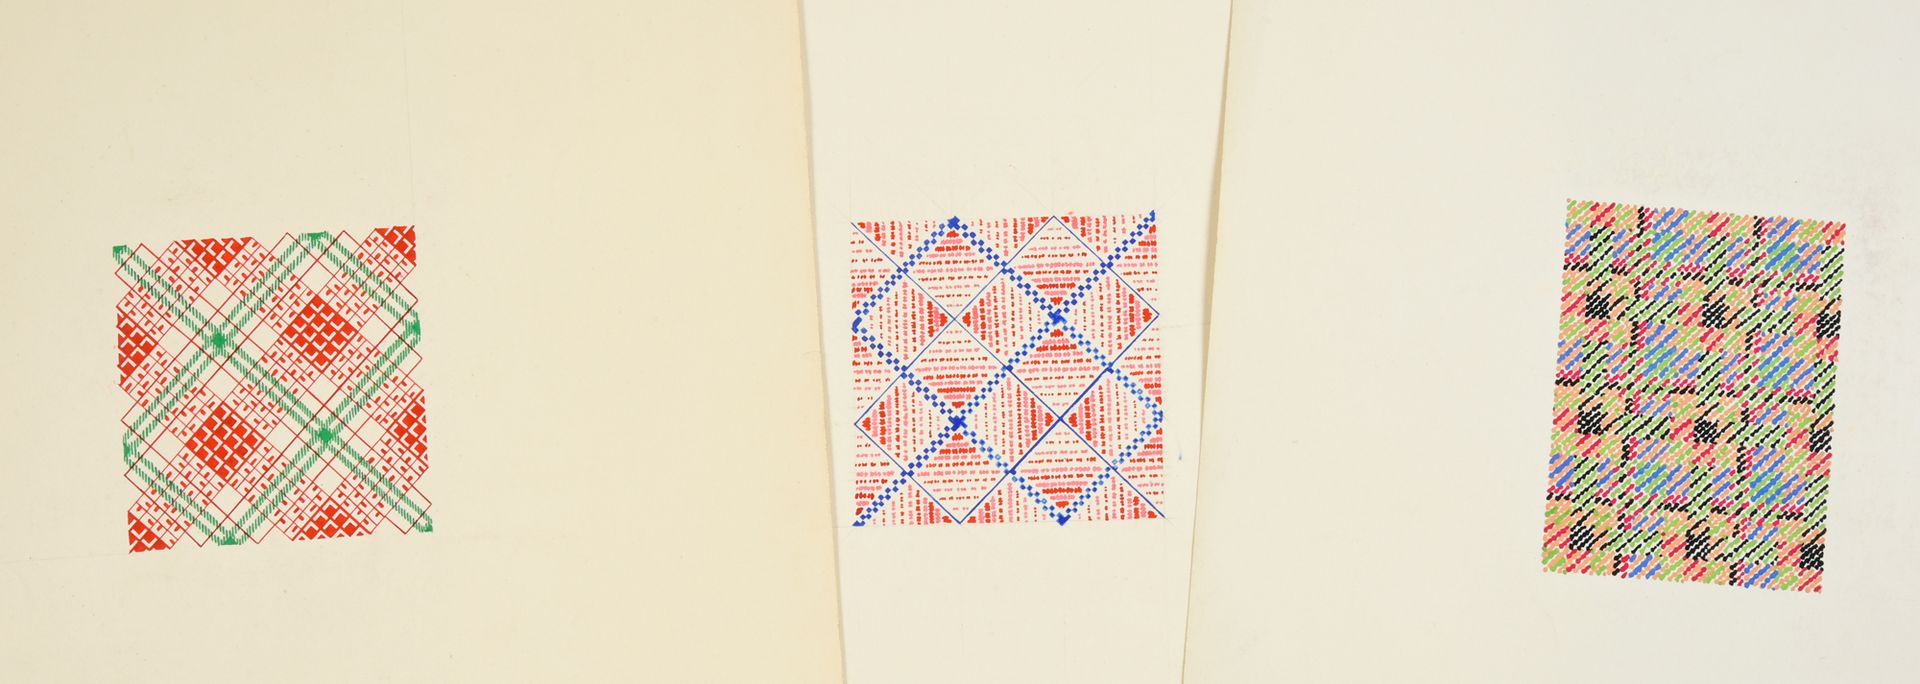 Null 一组时尚织物模型，1950-1970年左右，水粉和墨水在纸上；大部分是抽象和几何构图，包括小规模的网格和瓷砖。
大约150张画，从6 x 6厘米到15&hellip;